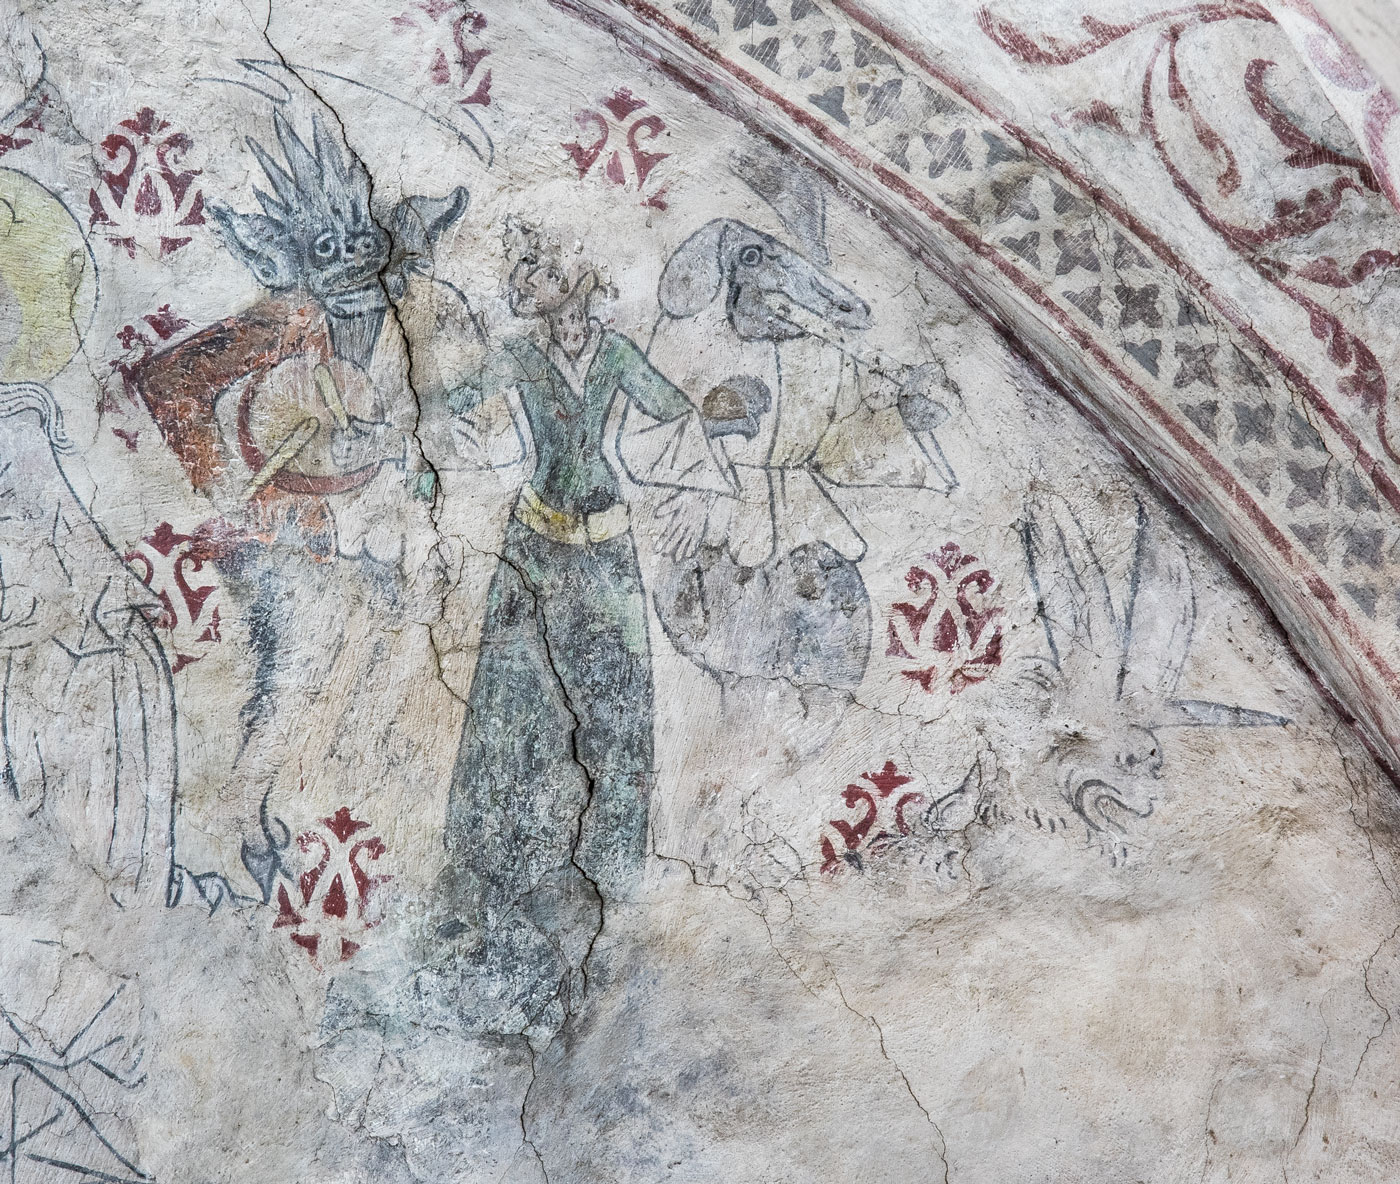 En kvinna förs dansande bort av djävulen och en demon. Detalj ur Yttersta domen - Torshälla kyrka